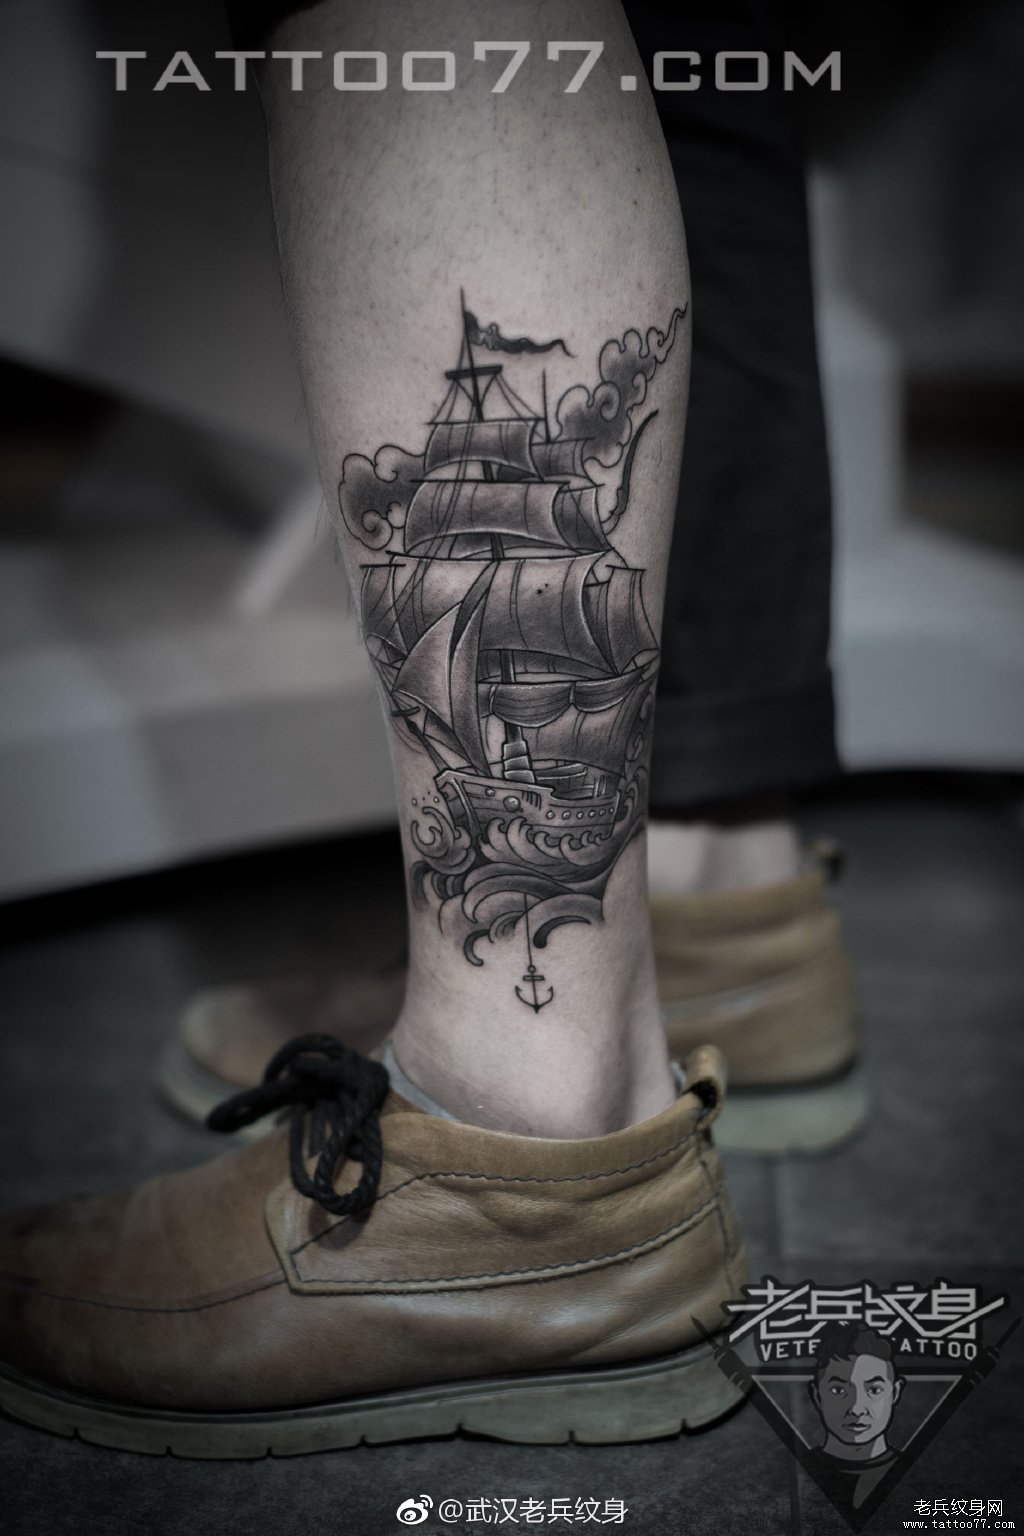 武汉纹身店打造的小腿帆船纹身图案作品